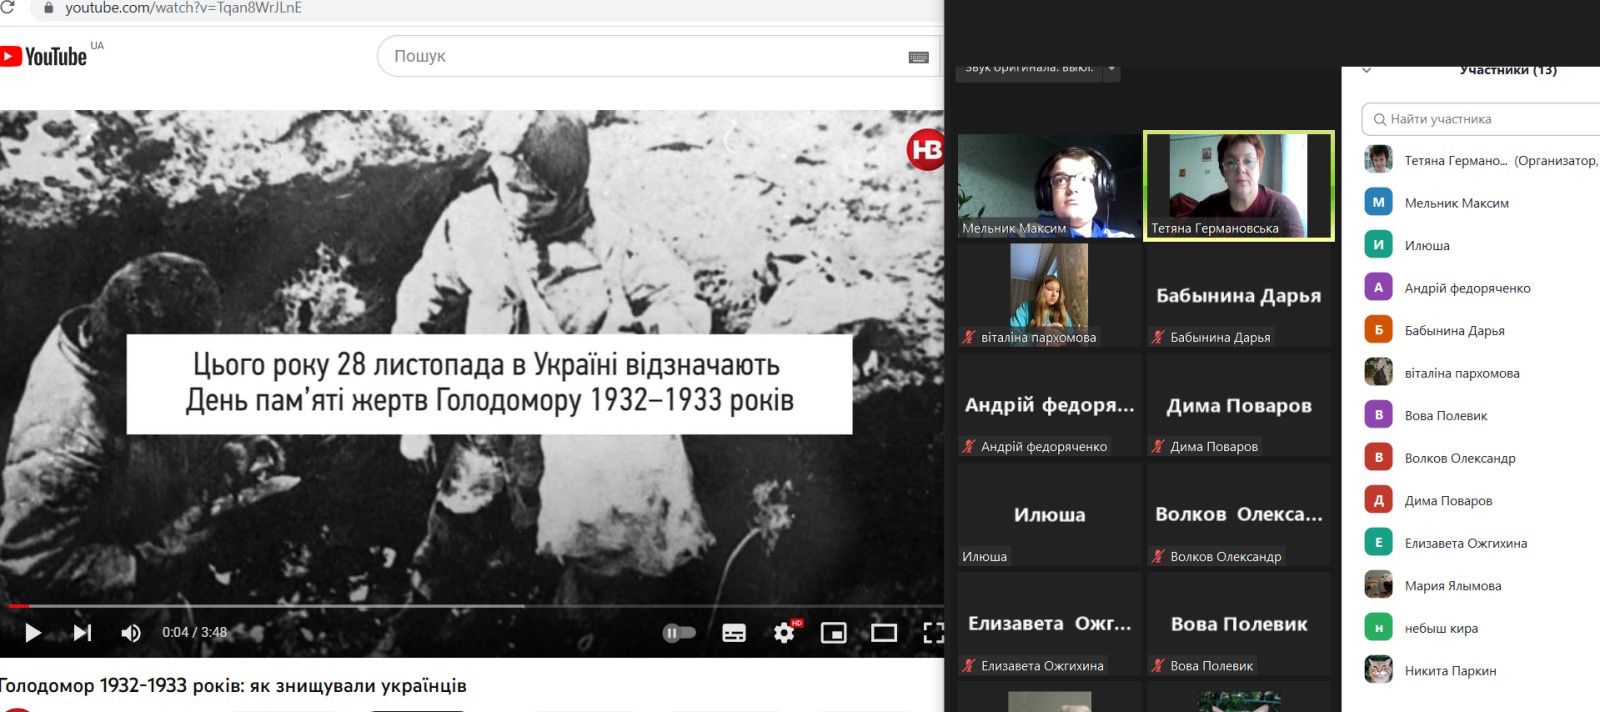 Відзначили День пам’яті жертв Голодоморів 1932-1933 років у Харкові